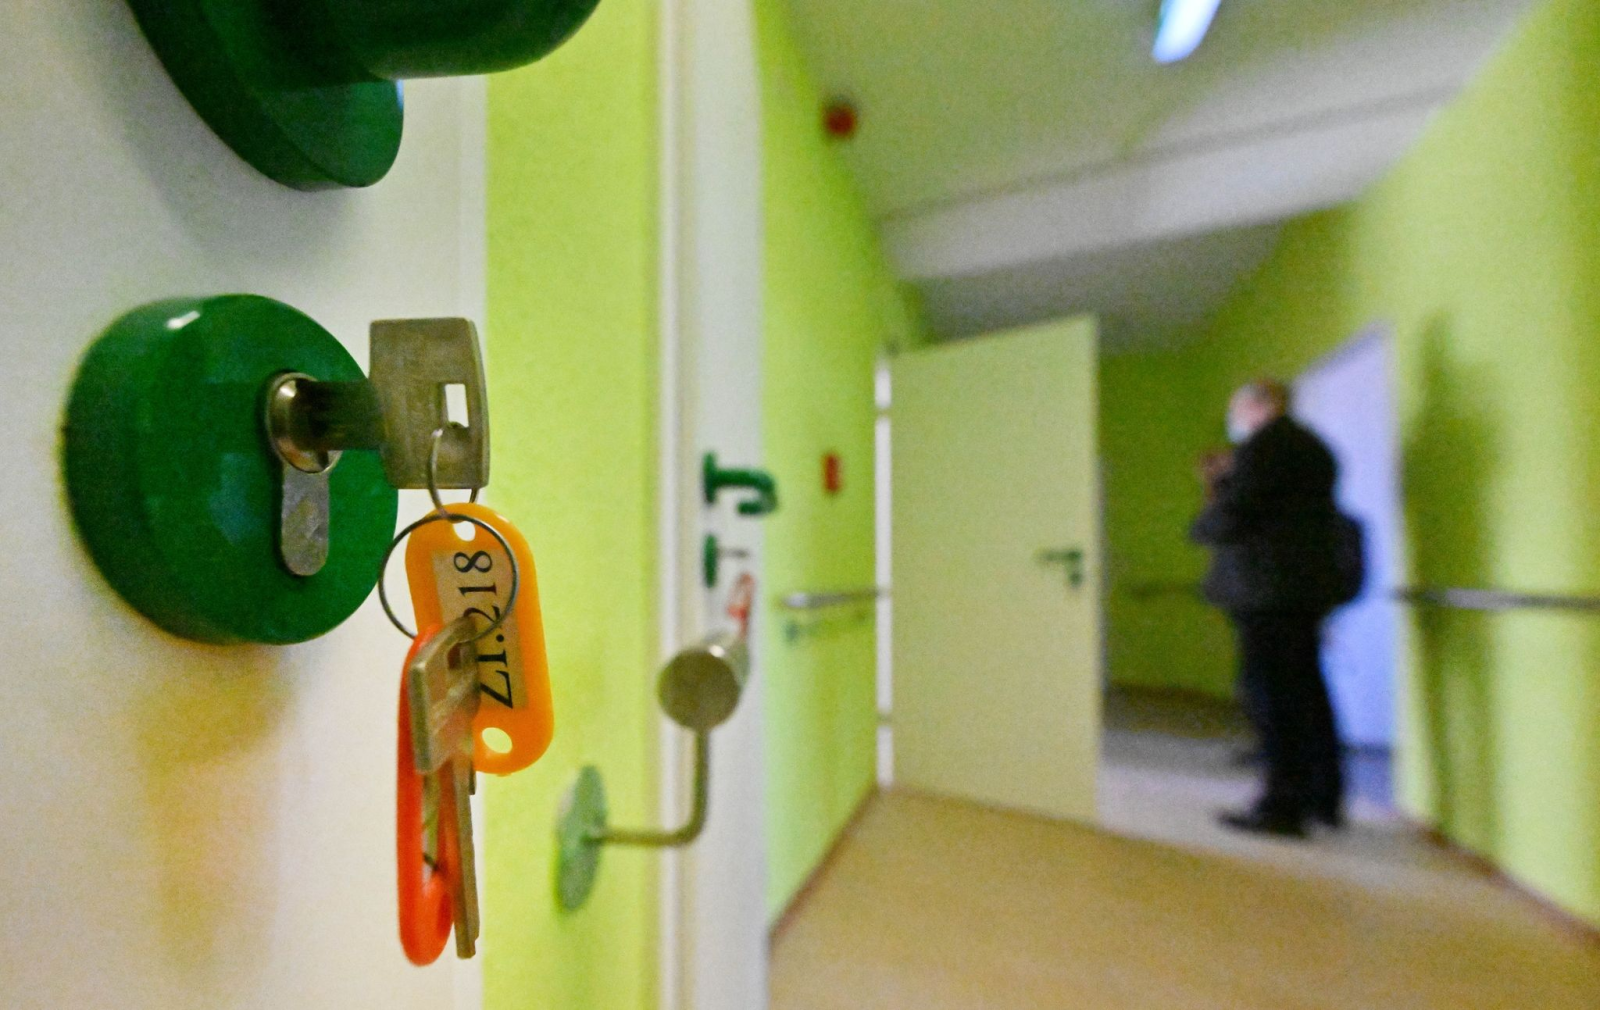 Schlüssel stecken im Schloss in einer Unterkunft für die Unterbringung von ukrainischen Geflüchteten.